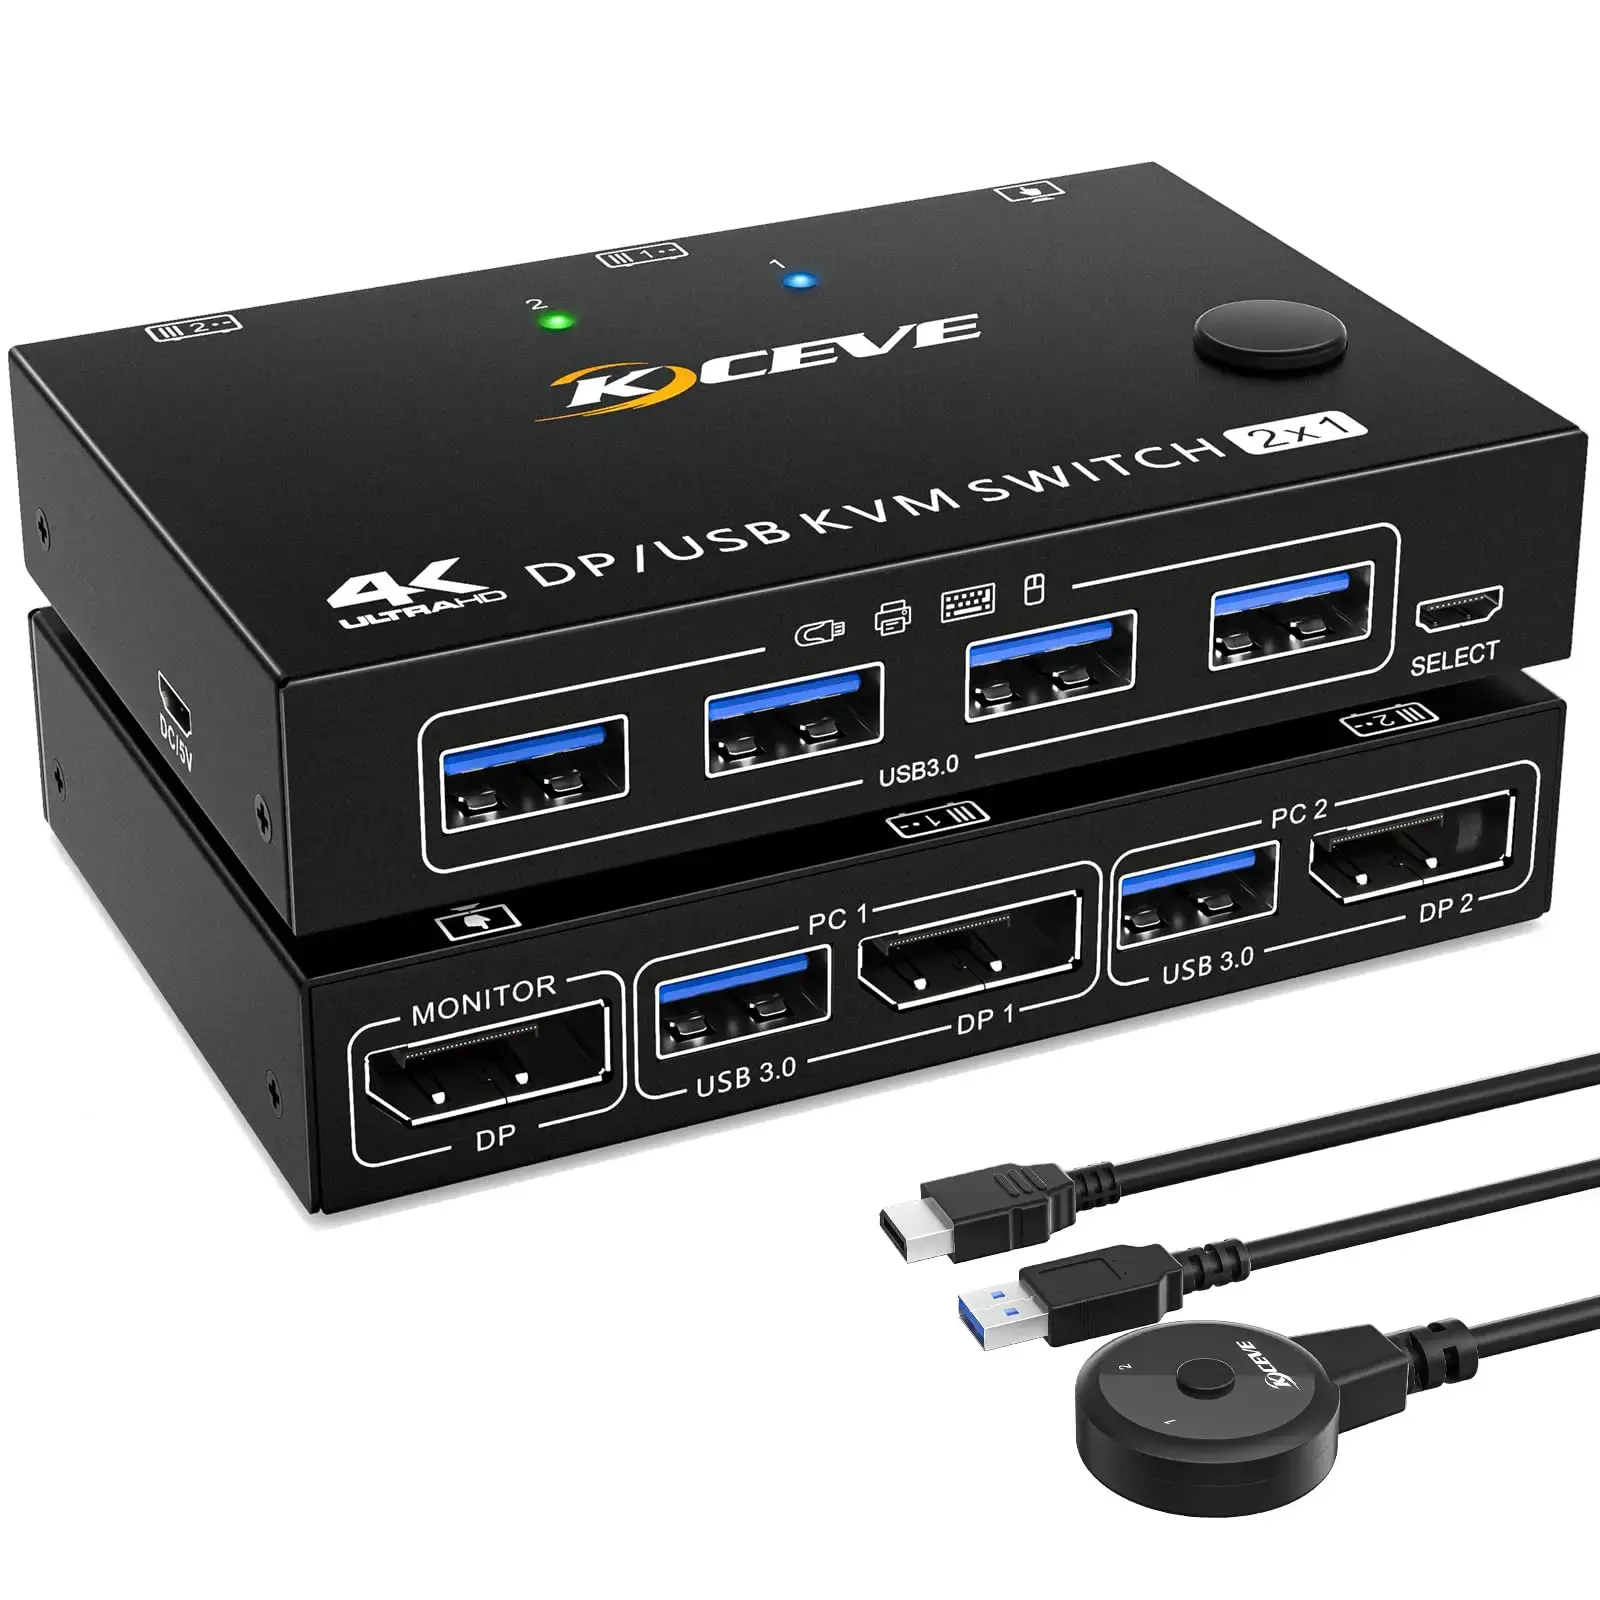 KCEVE USB 3.0 KVM مفتاح HDMI 3440x1440@144Hz,3840x2160@60Hz مراقب 2 في 1 لمشاركة 4 أجهزة USB 3.0 أدوات مفتاح التحكم الخارجي